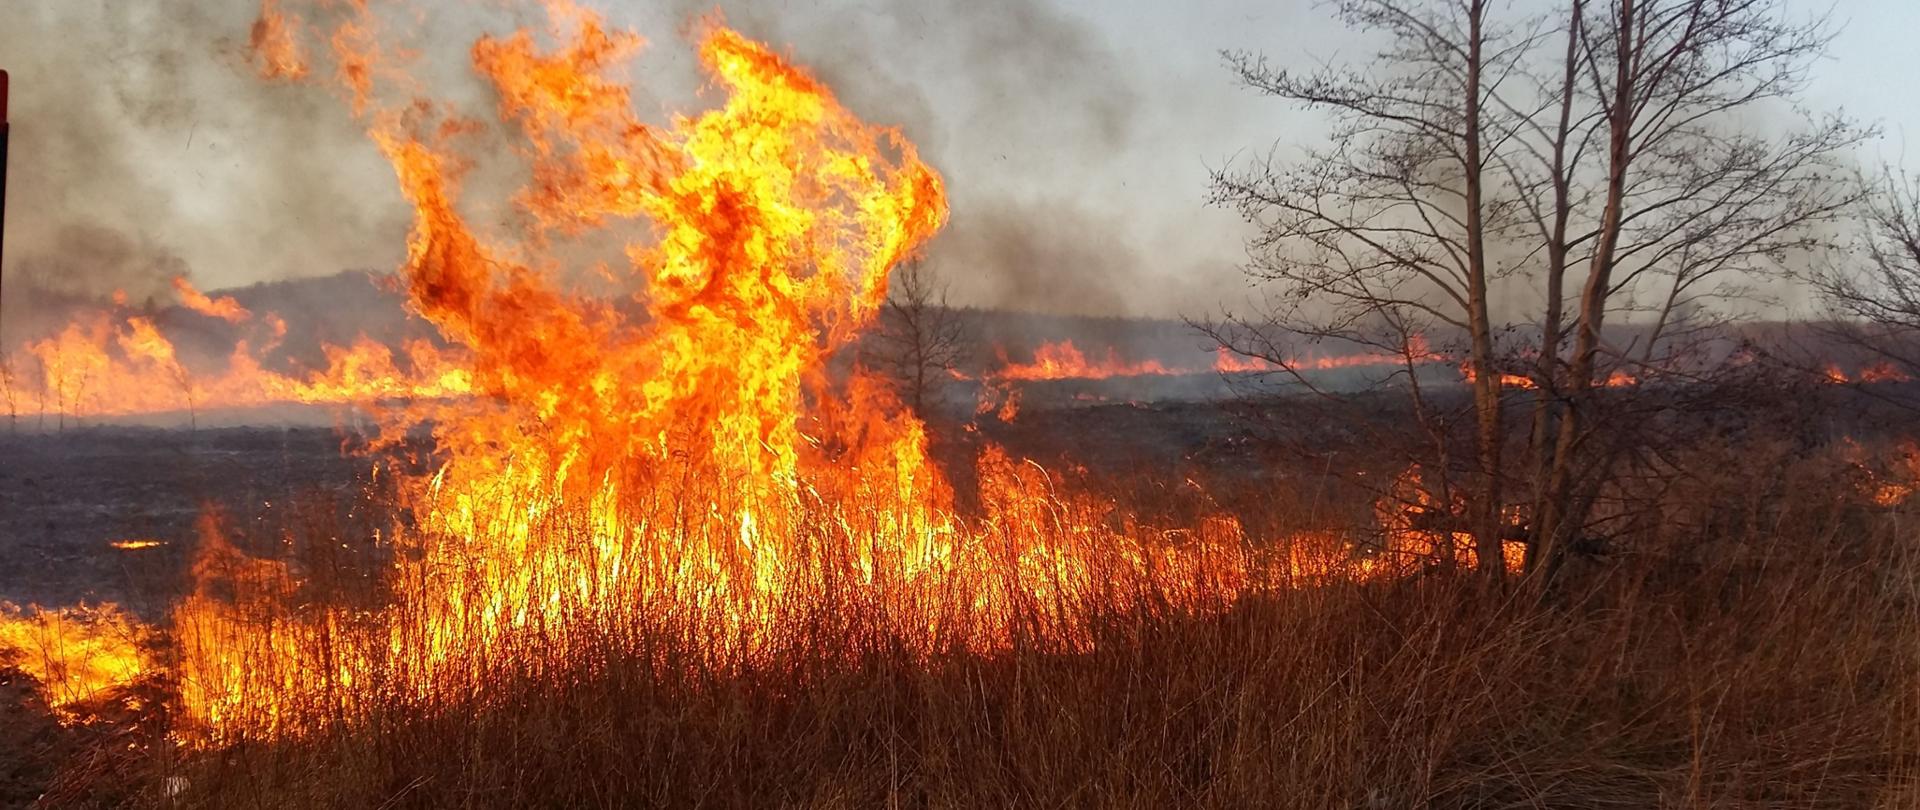 Palące się nieużytki na terenach rolniczych. Płomienie miejscami wysokie na kilka metrów.